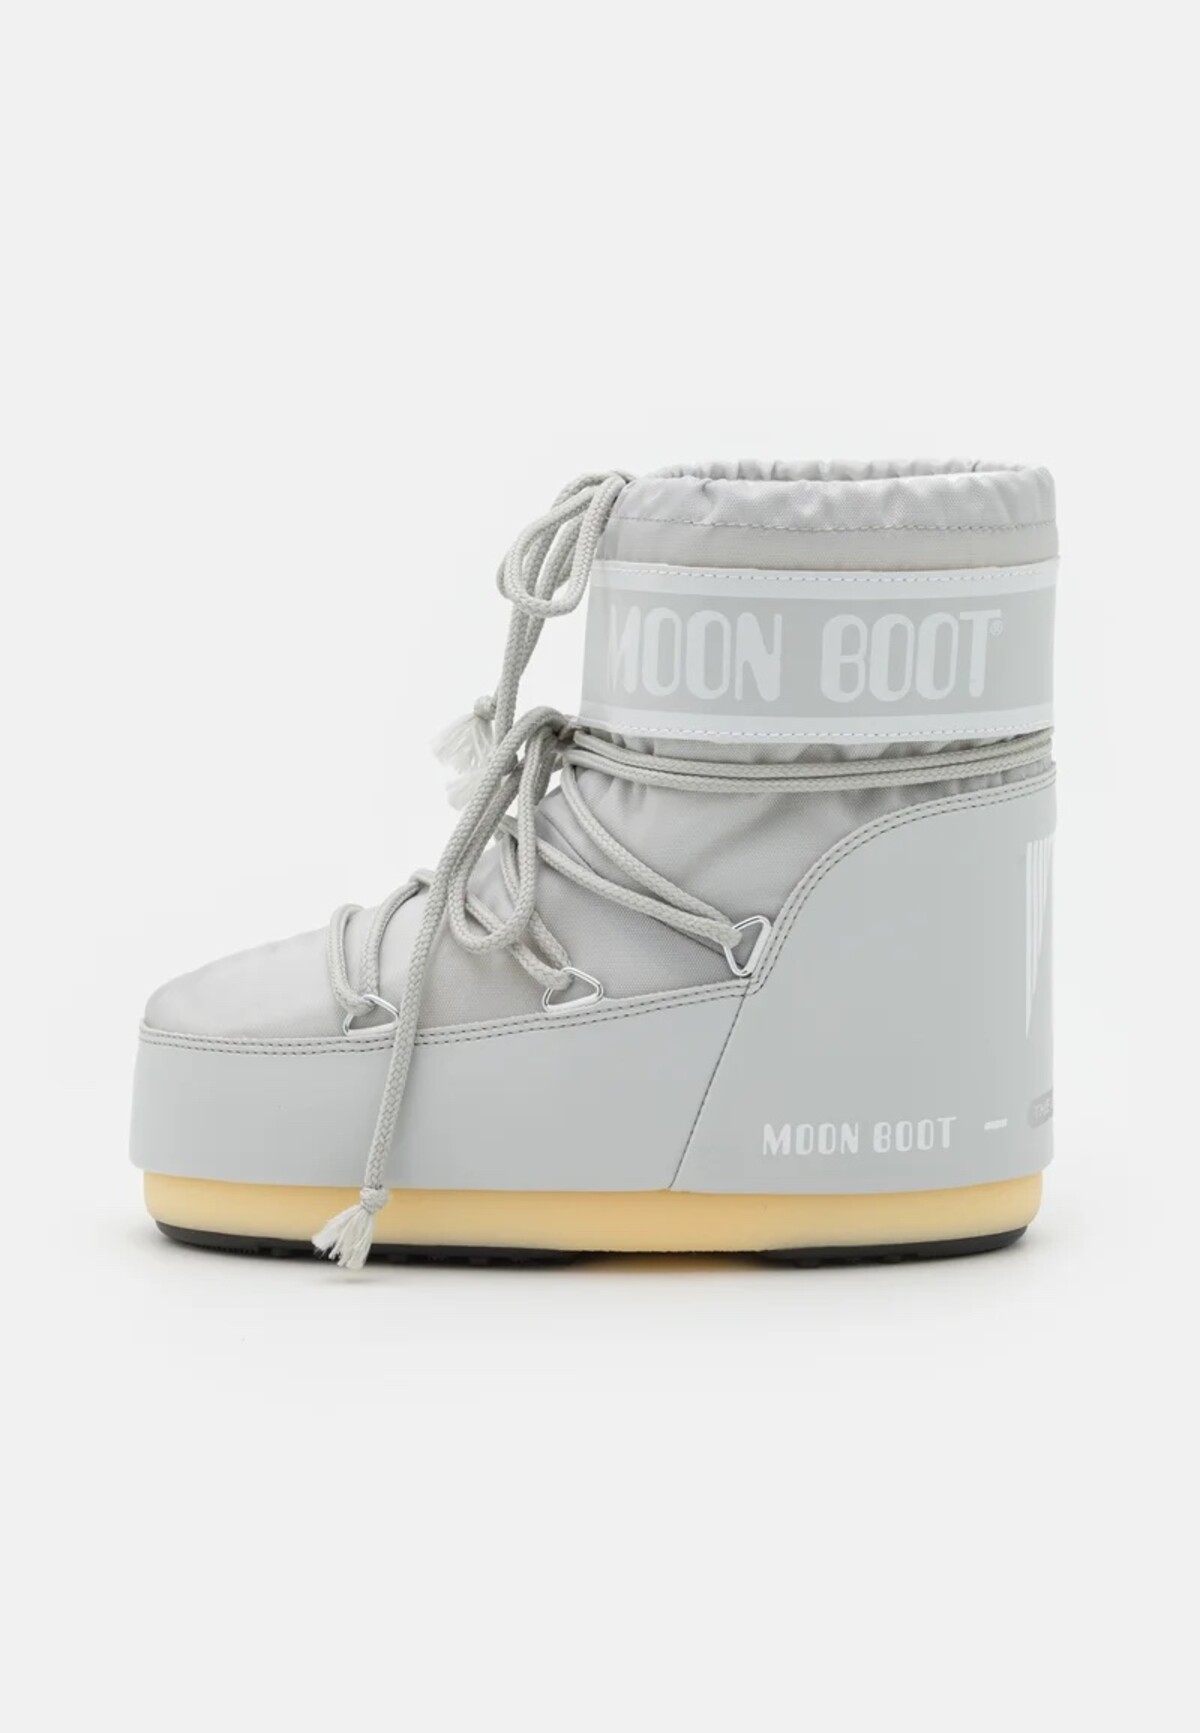 Moon Boot.